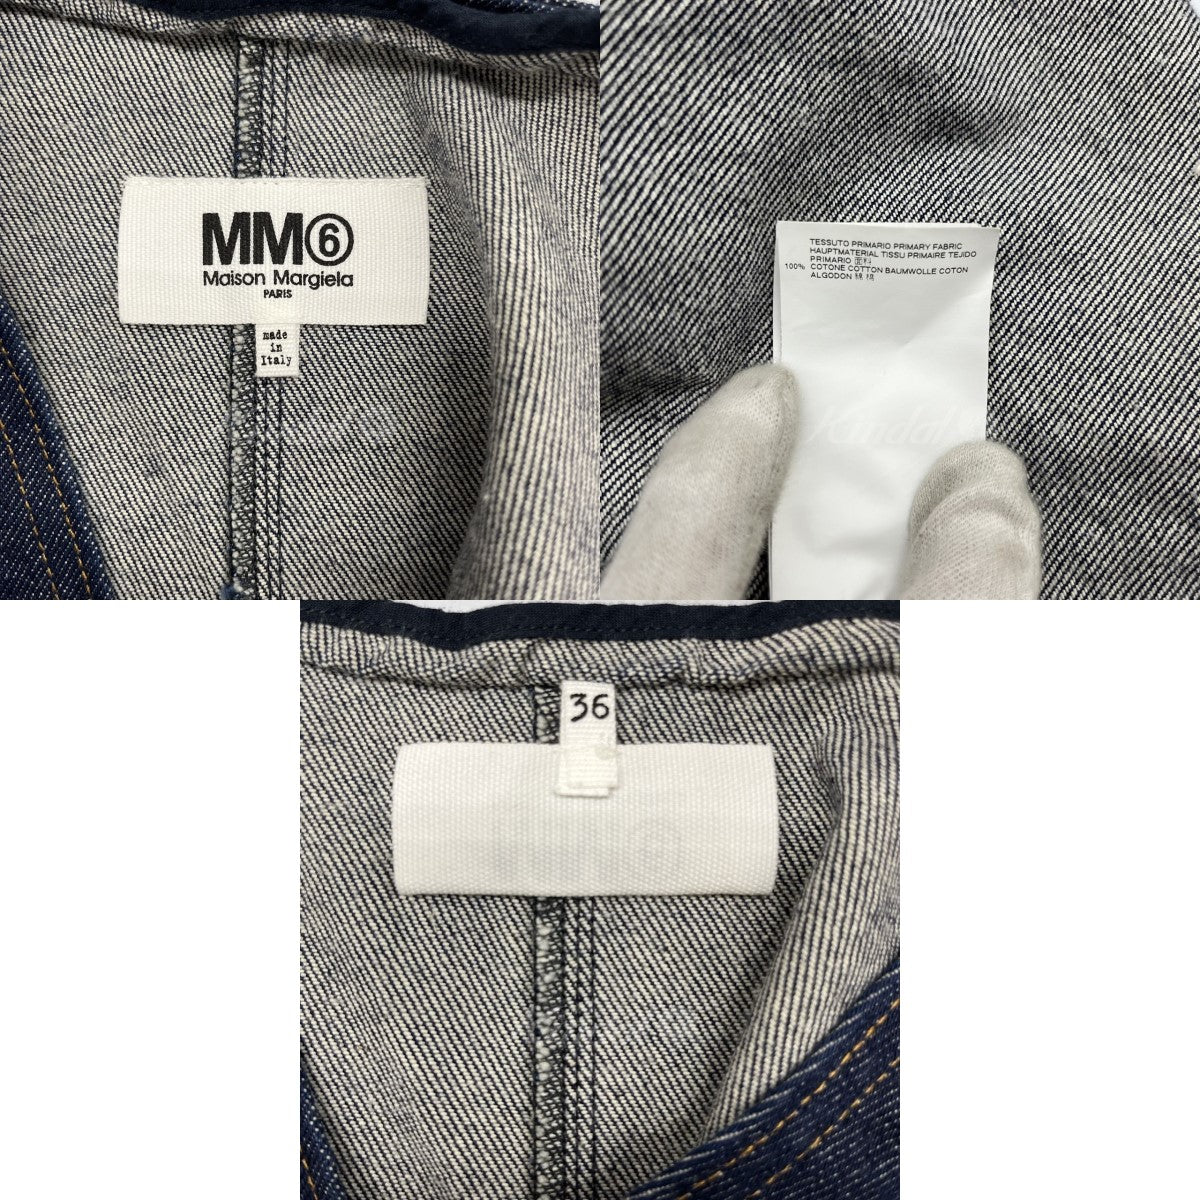 MM6 Maison Margiela(エムエムシックス) デニムプルオーバーシャツ Vネックブラウス S52NC0085